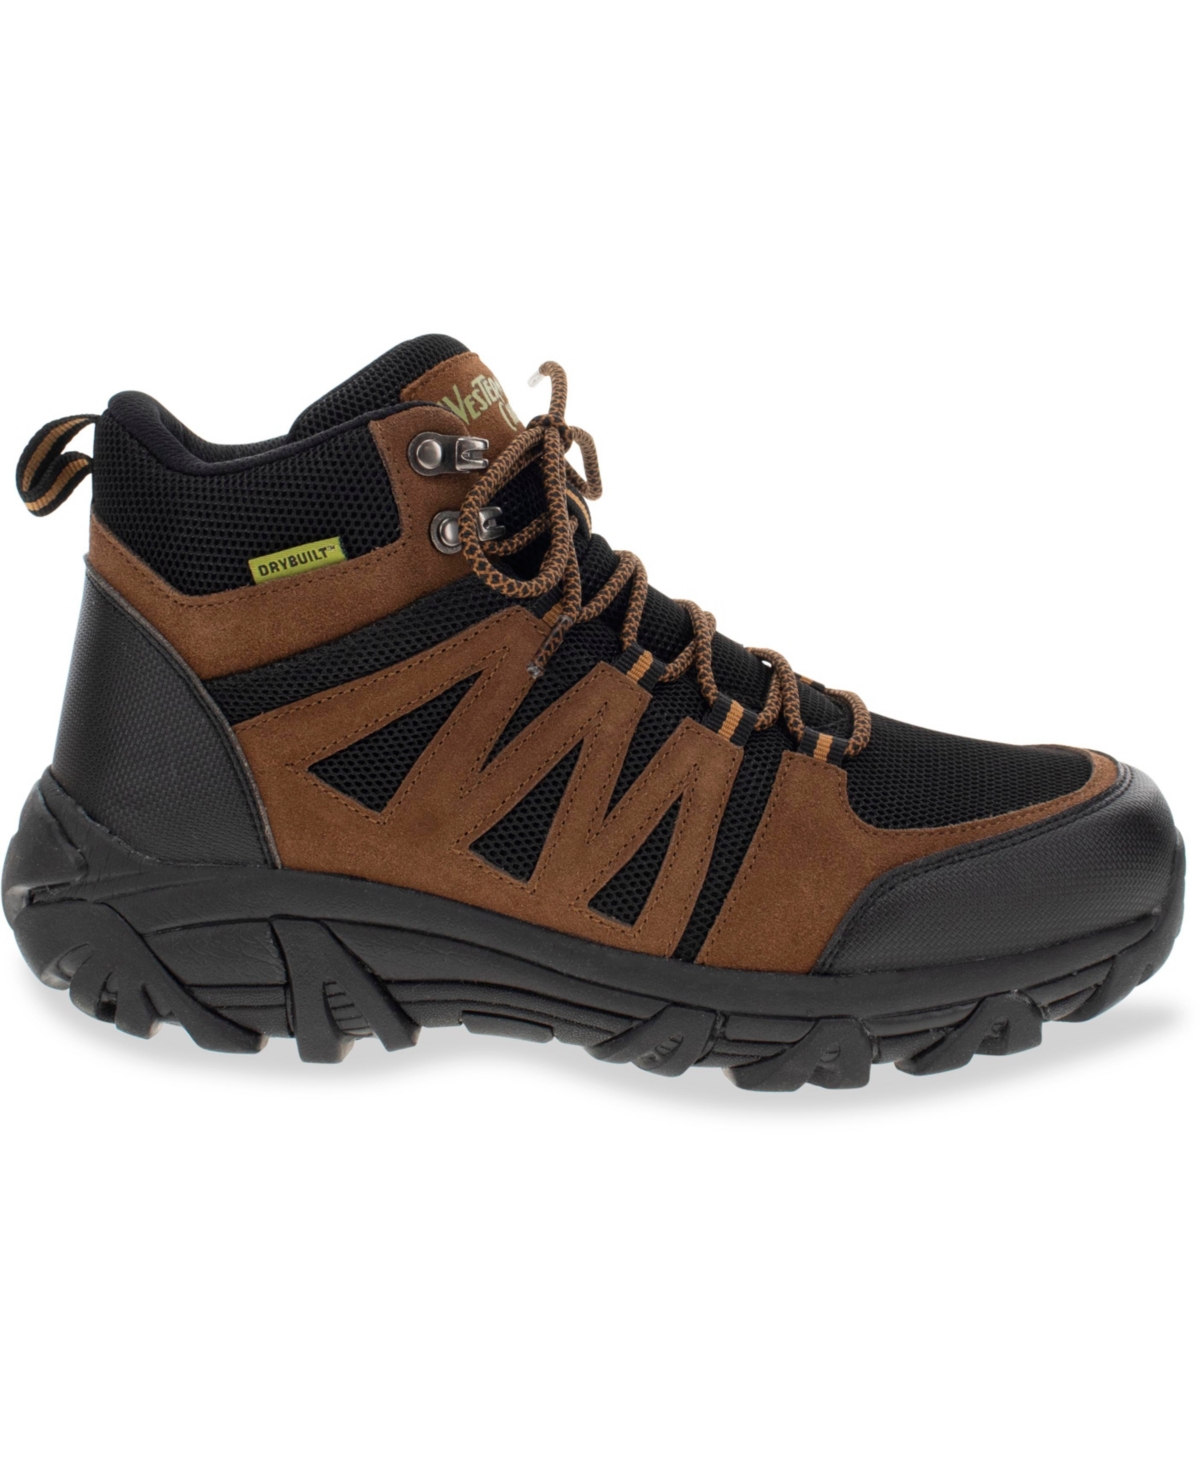 Men's Trailscape Hiker Boot - Dark brown